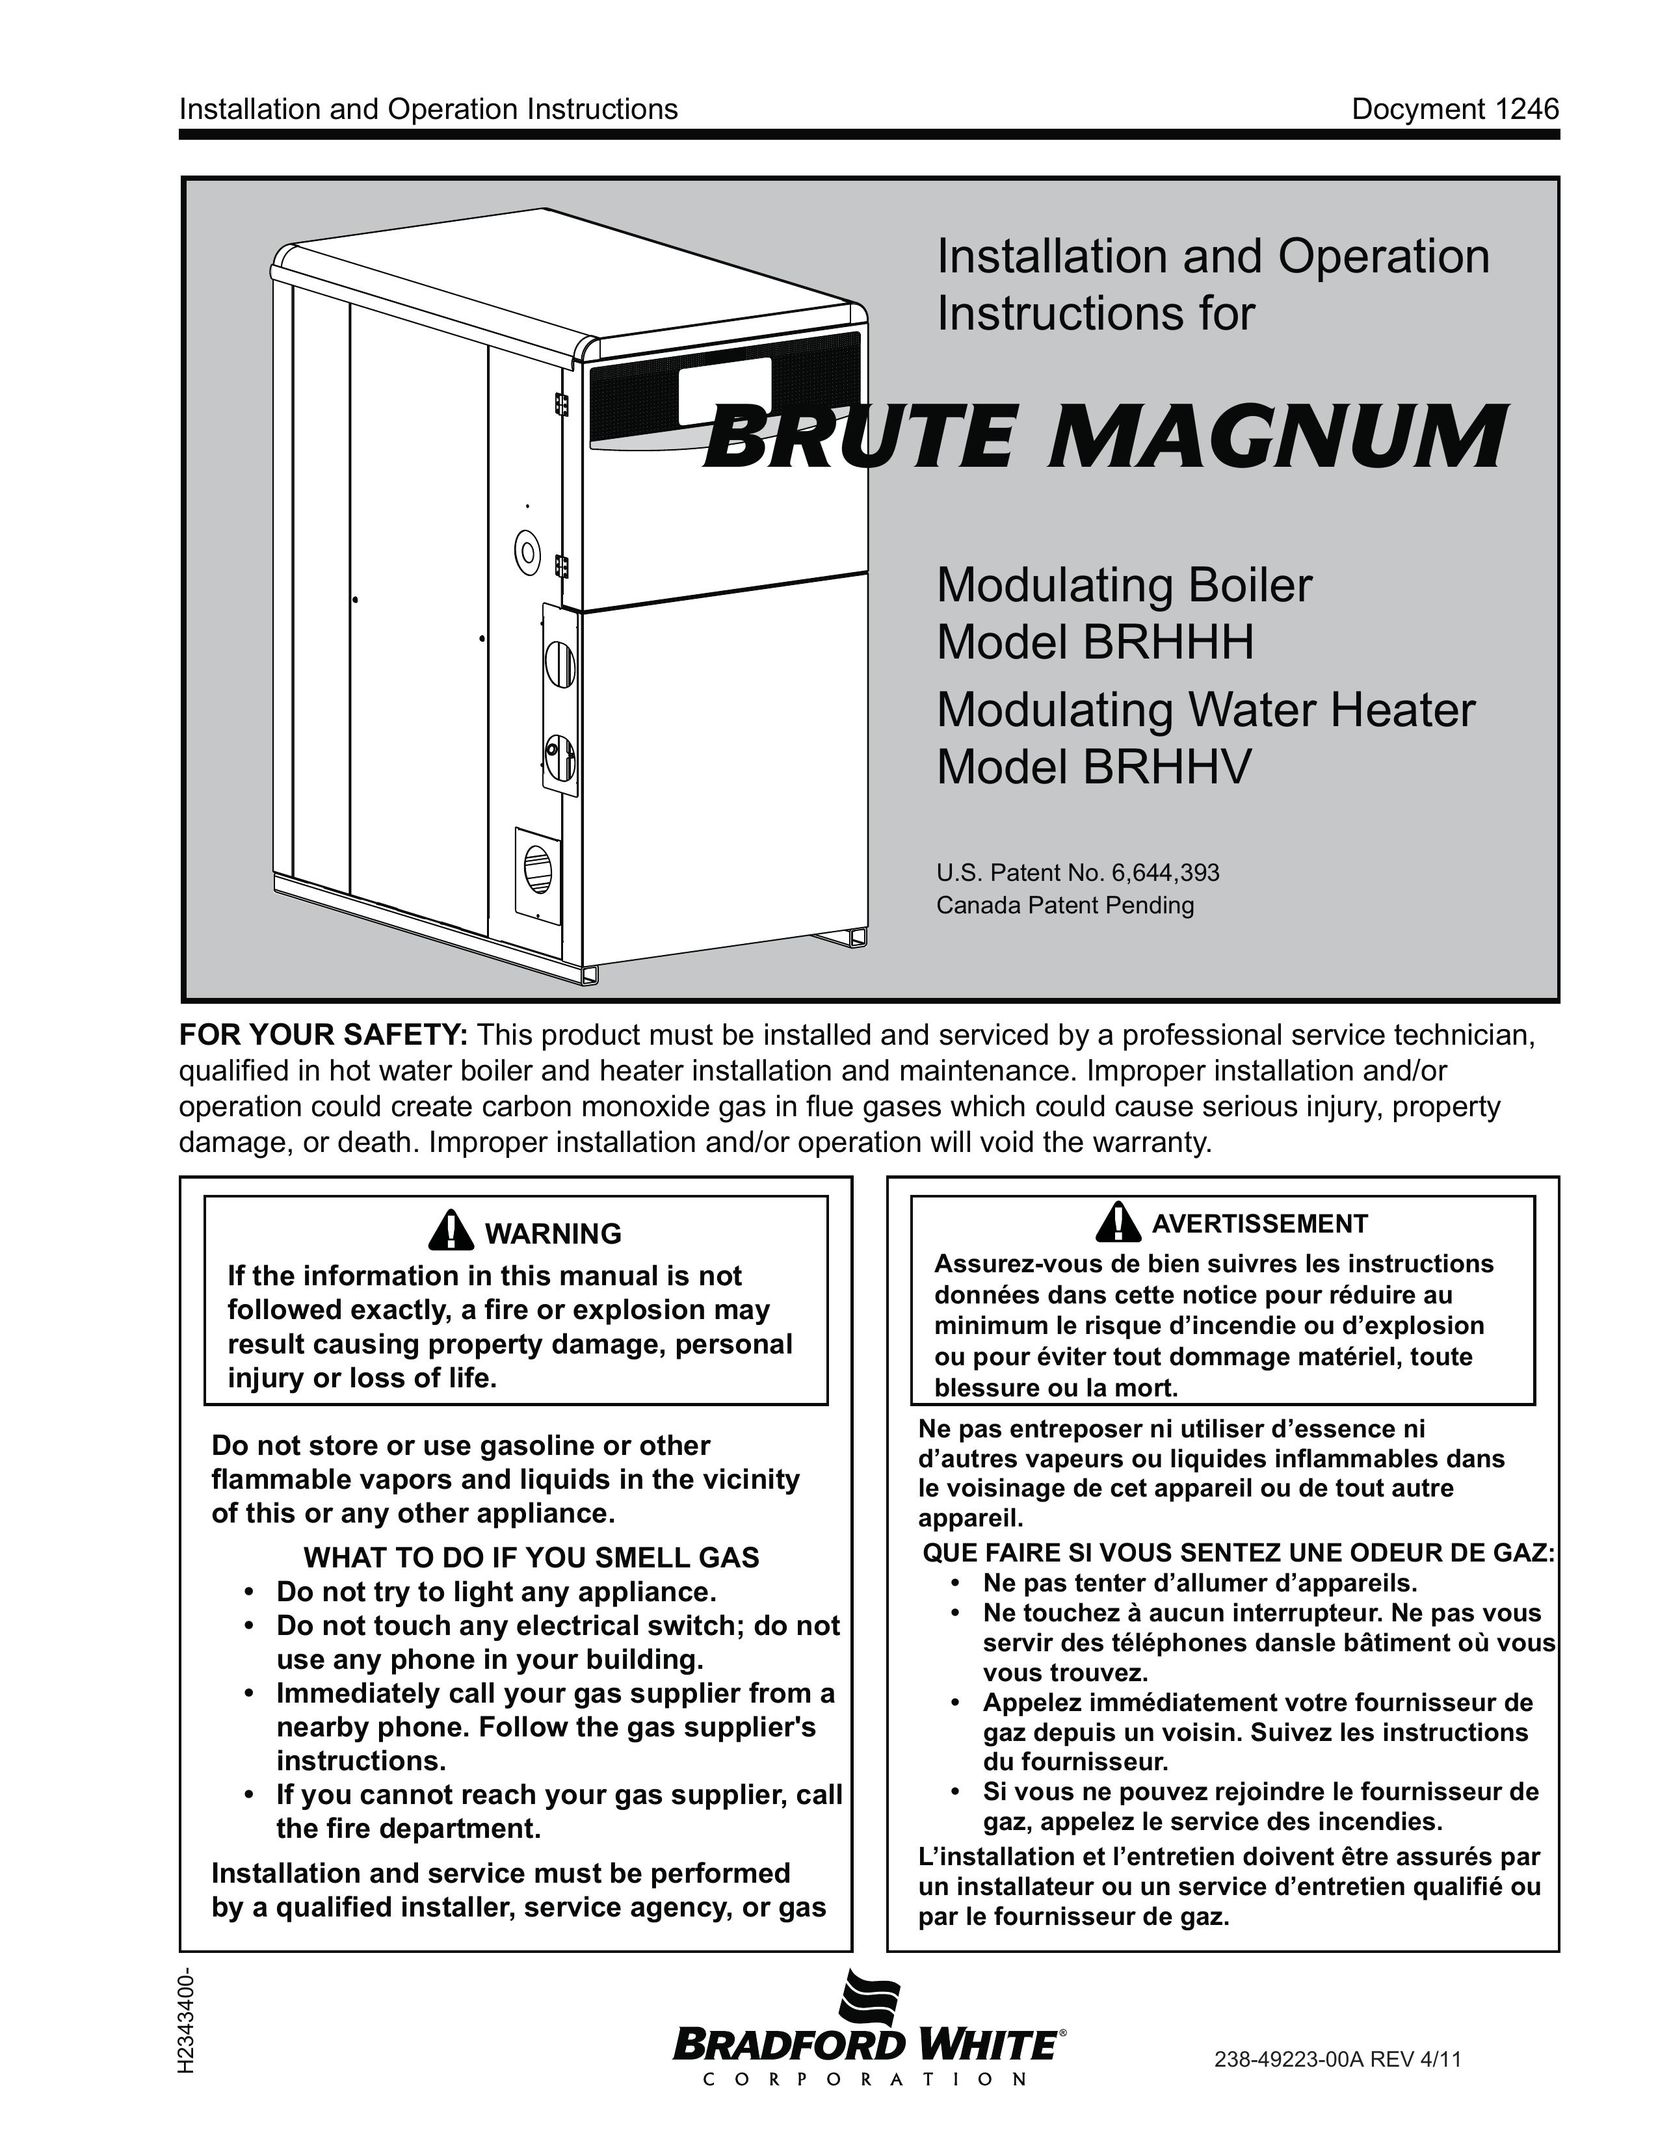 Bradford-White Corp BRHHV Boiler User Manual